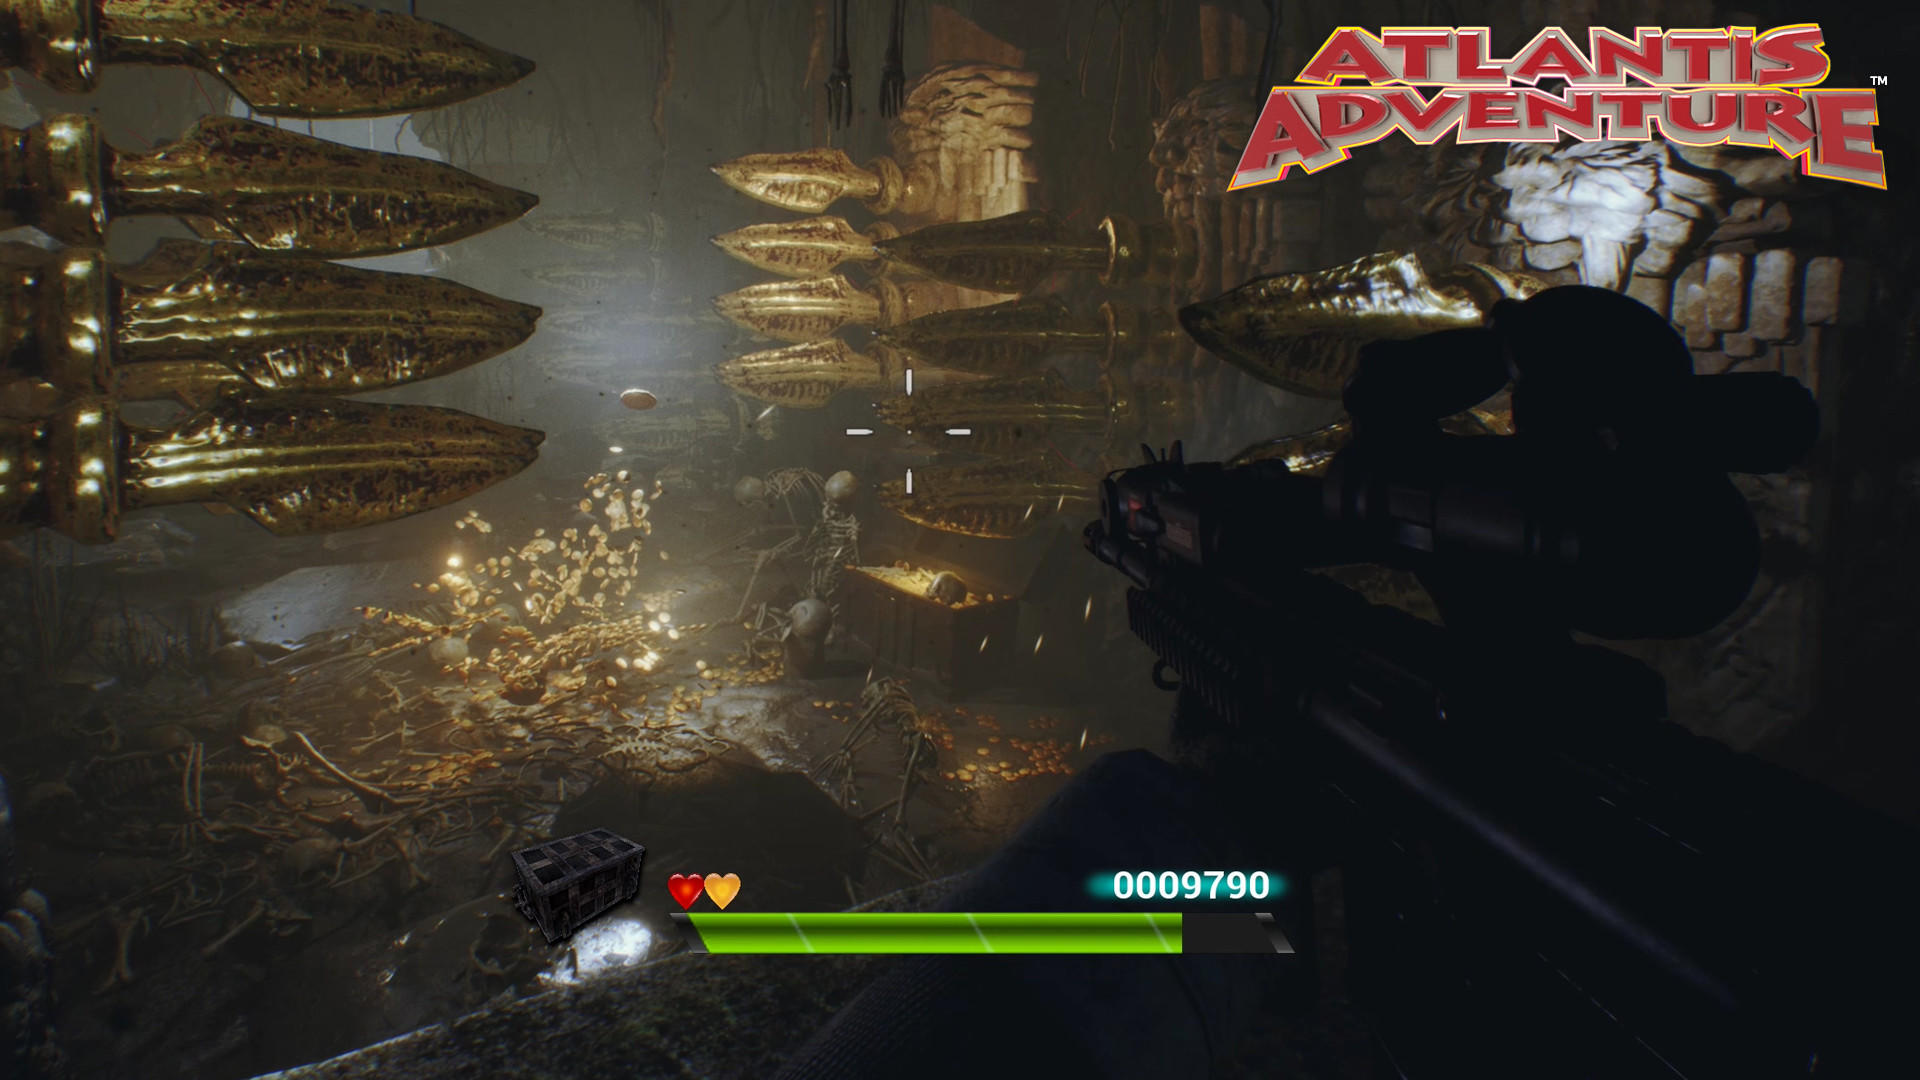 Atlantis Adventure screenshot game